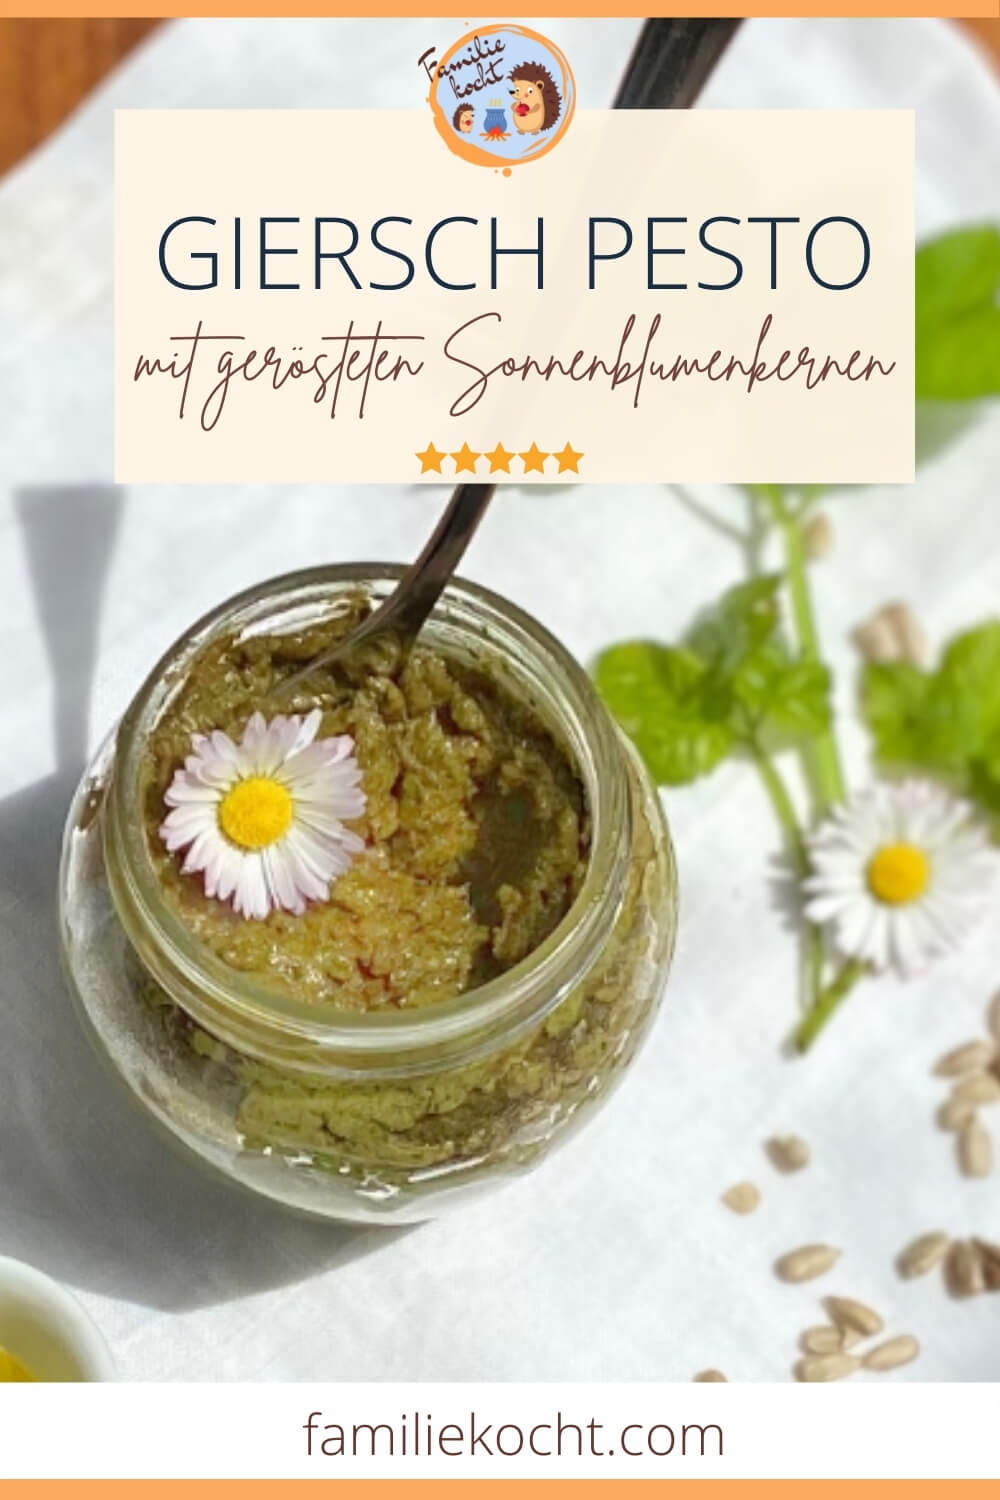 Giersch Pesto